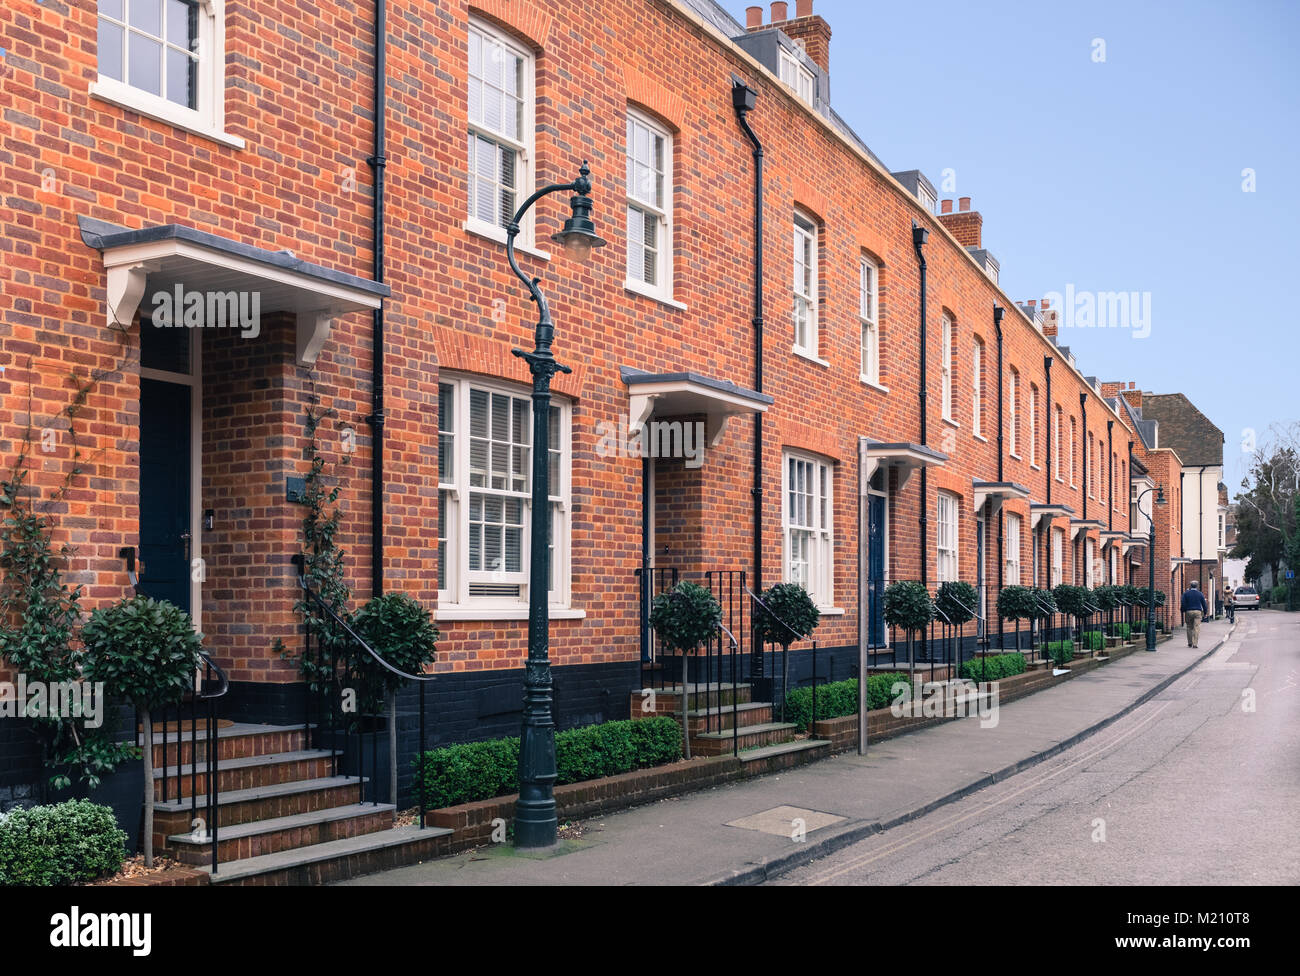 Red Brick moderne Architektur terrasse Häuser (Reihenhäuser) mit retro, vintage Victorian für. Es vold fashin Stil Straßenlaternen, Schärpe windo Stockfoto